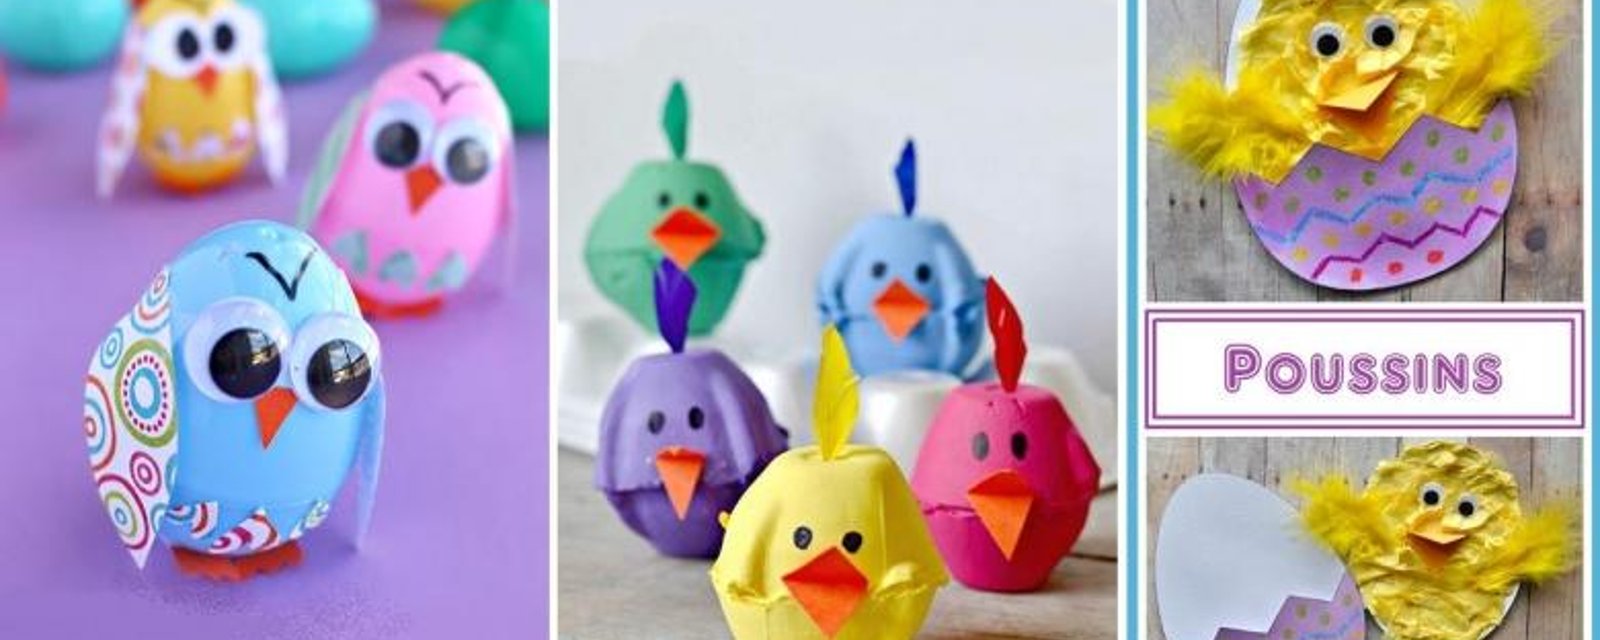 18 Magnifiques bricolages à faire avec les enfants pour Pâques, sous le thème des poussins! 